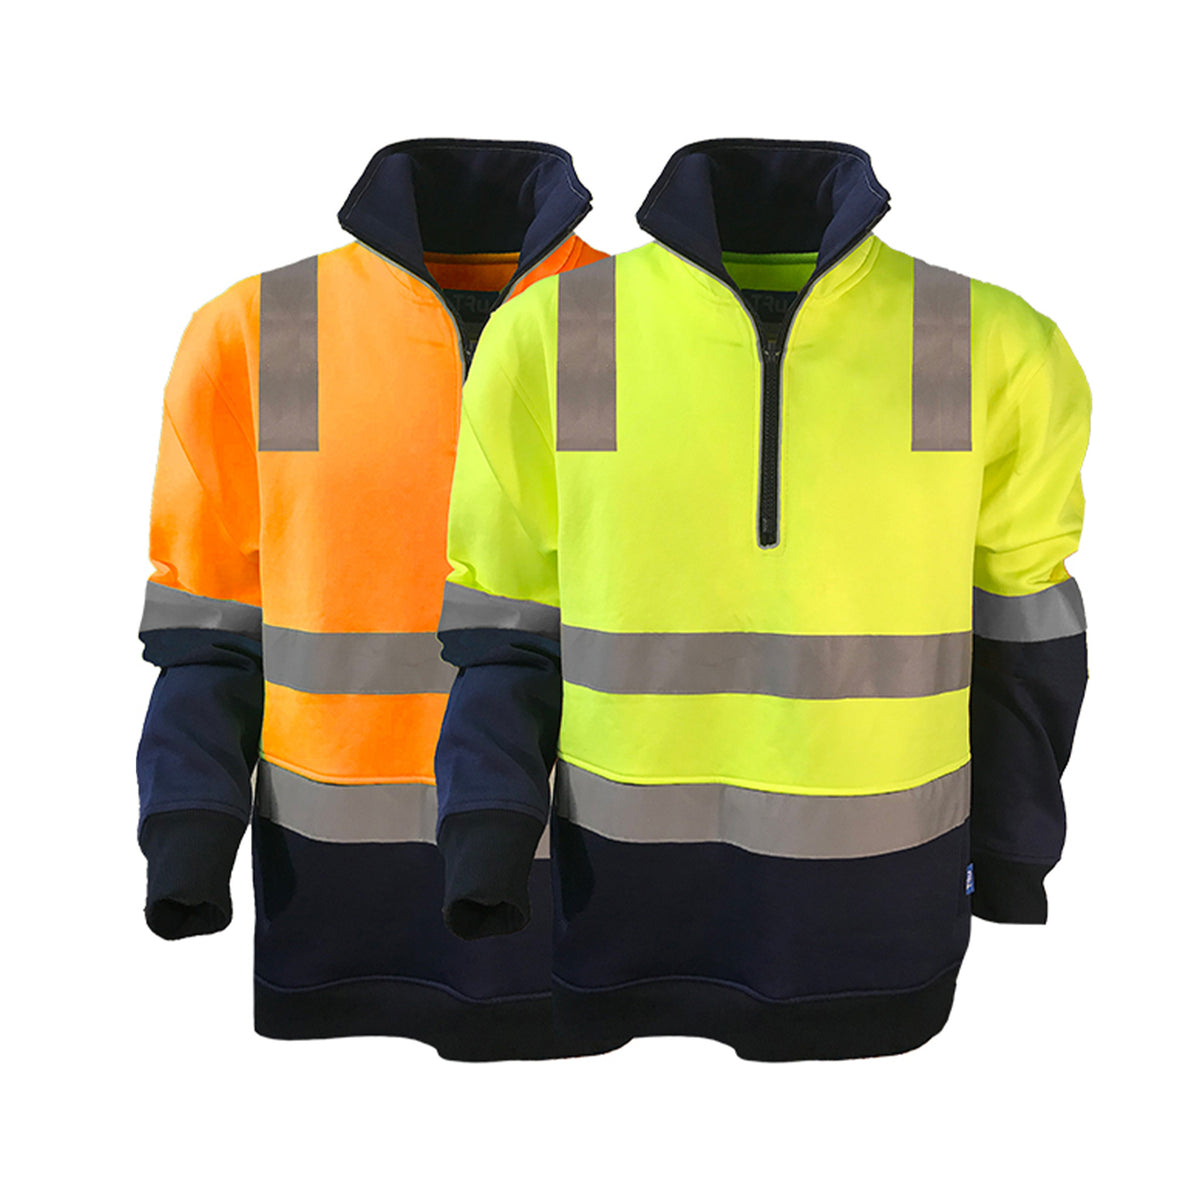 1/4 zip fleece jumper with tru reflective tape in yellow navy and orange navy